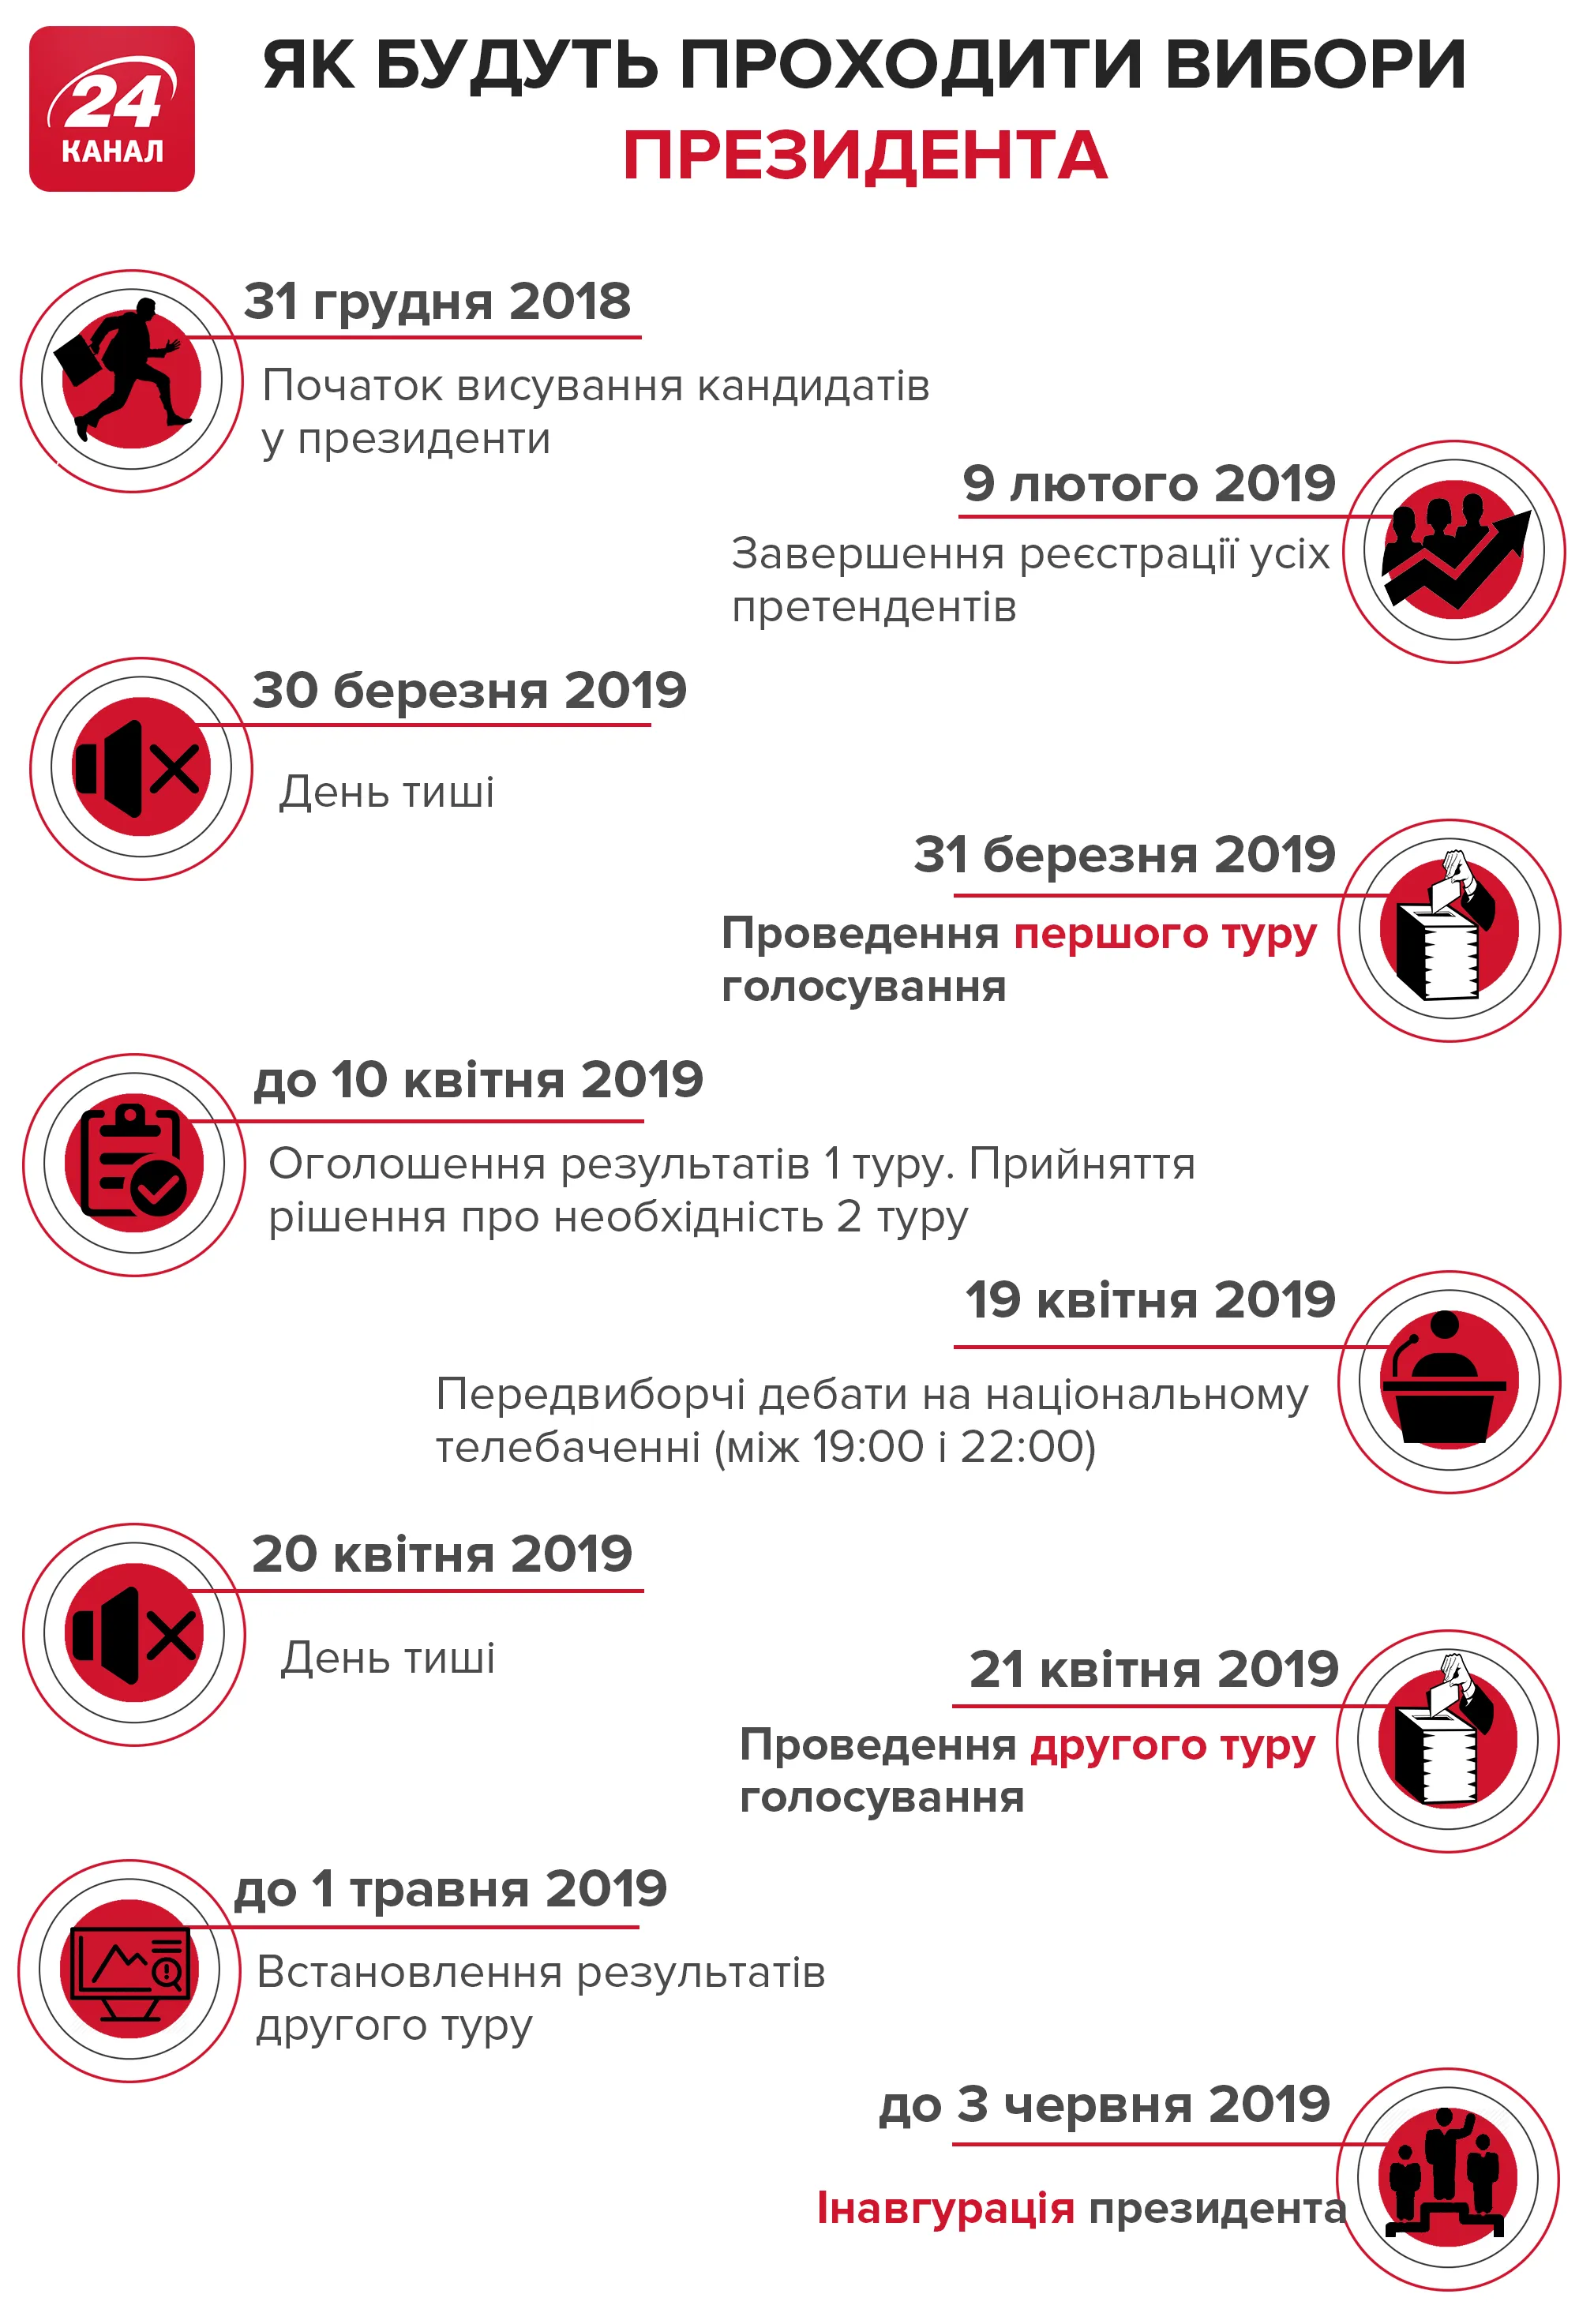 коли вибори президента України 2019